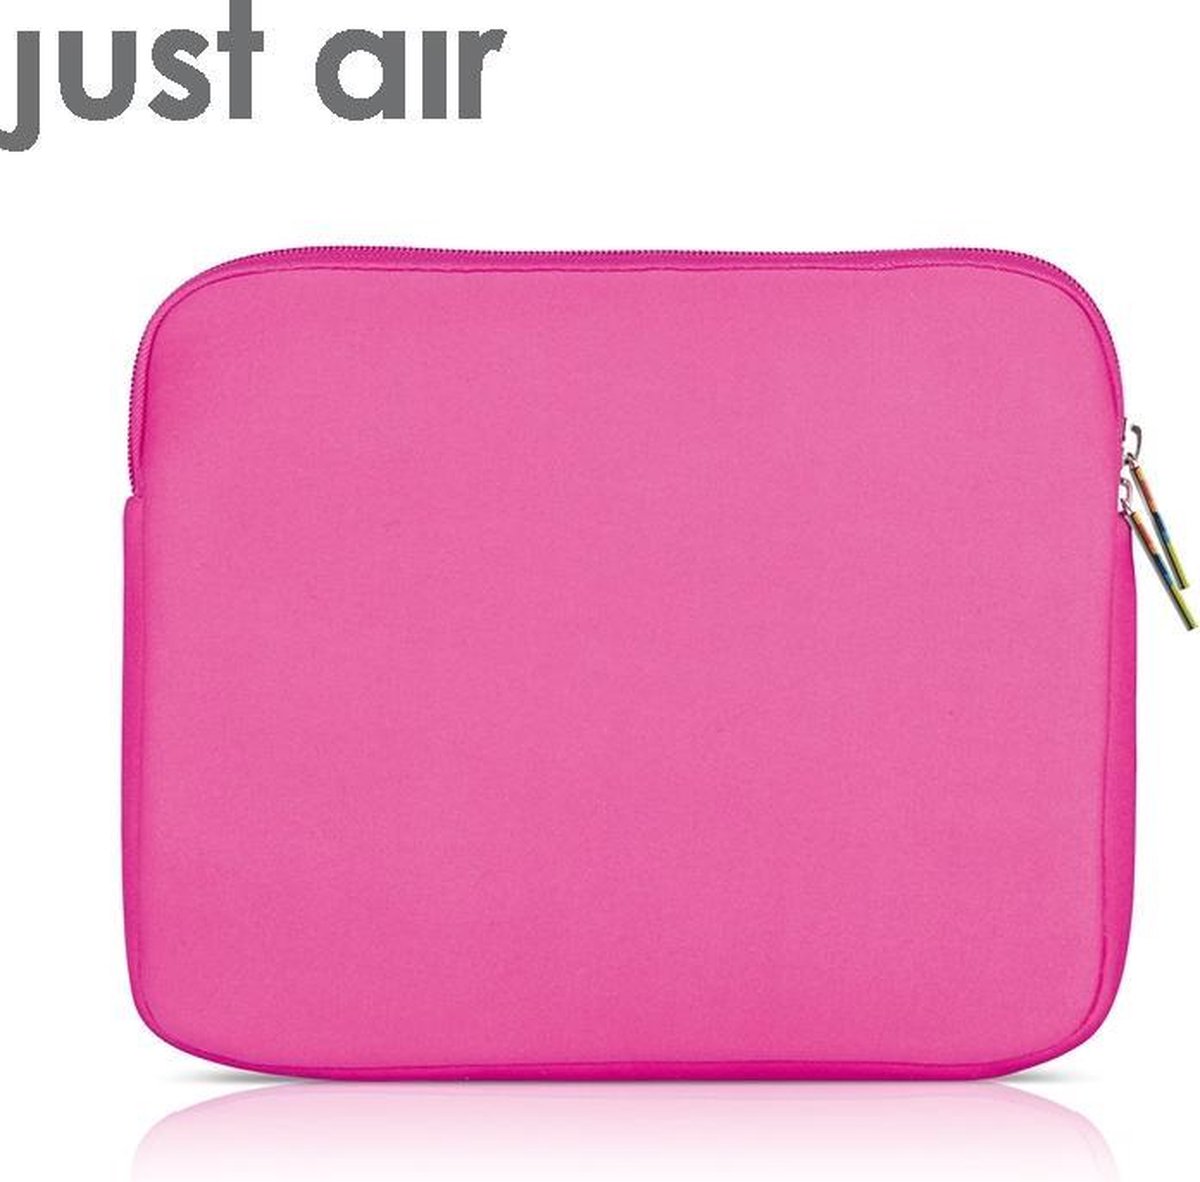 Just Air iPad Case Neoprene Pink - Roze hoes voor IPad